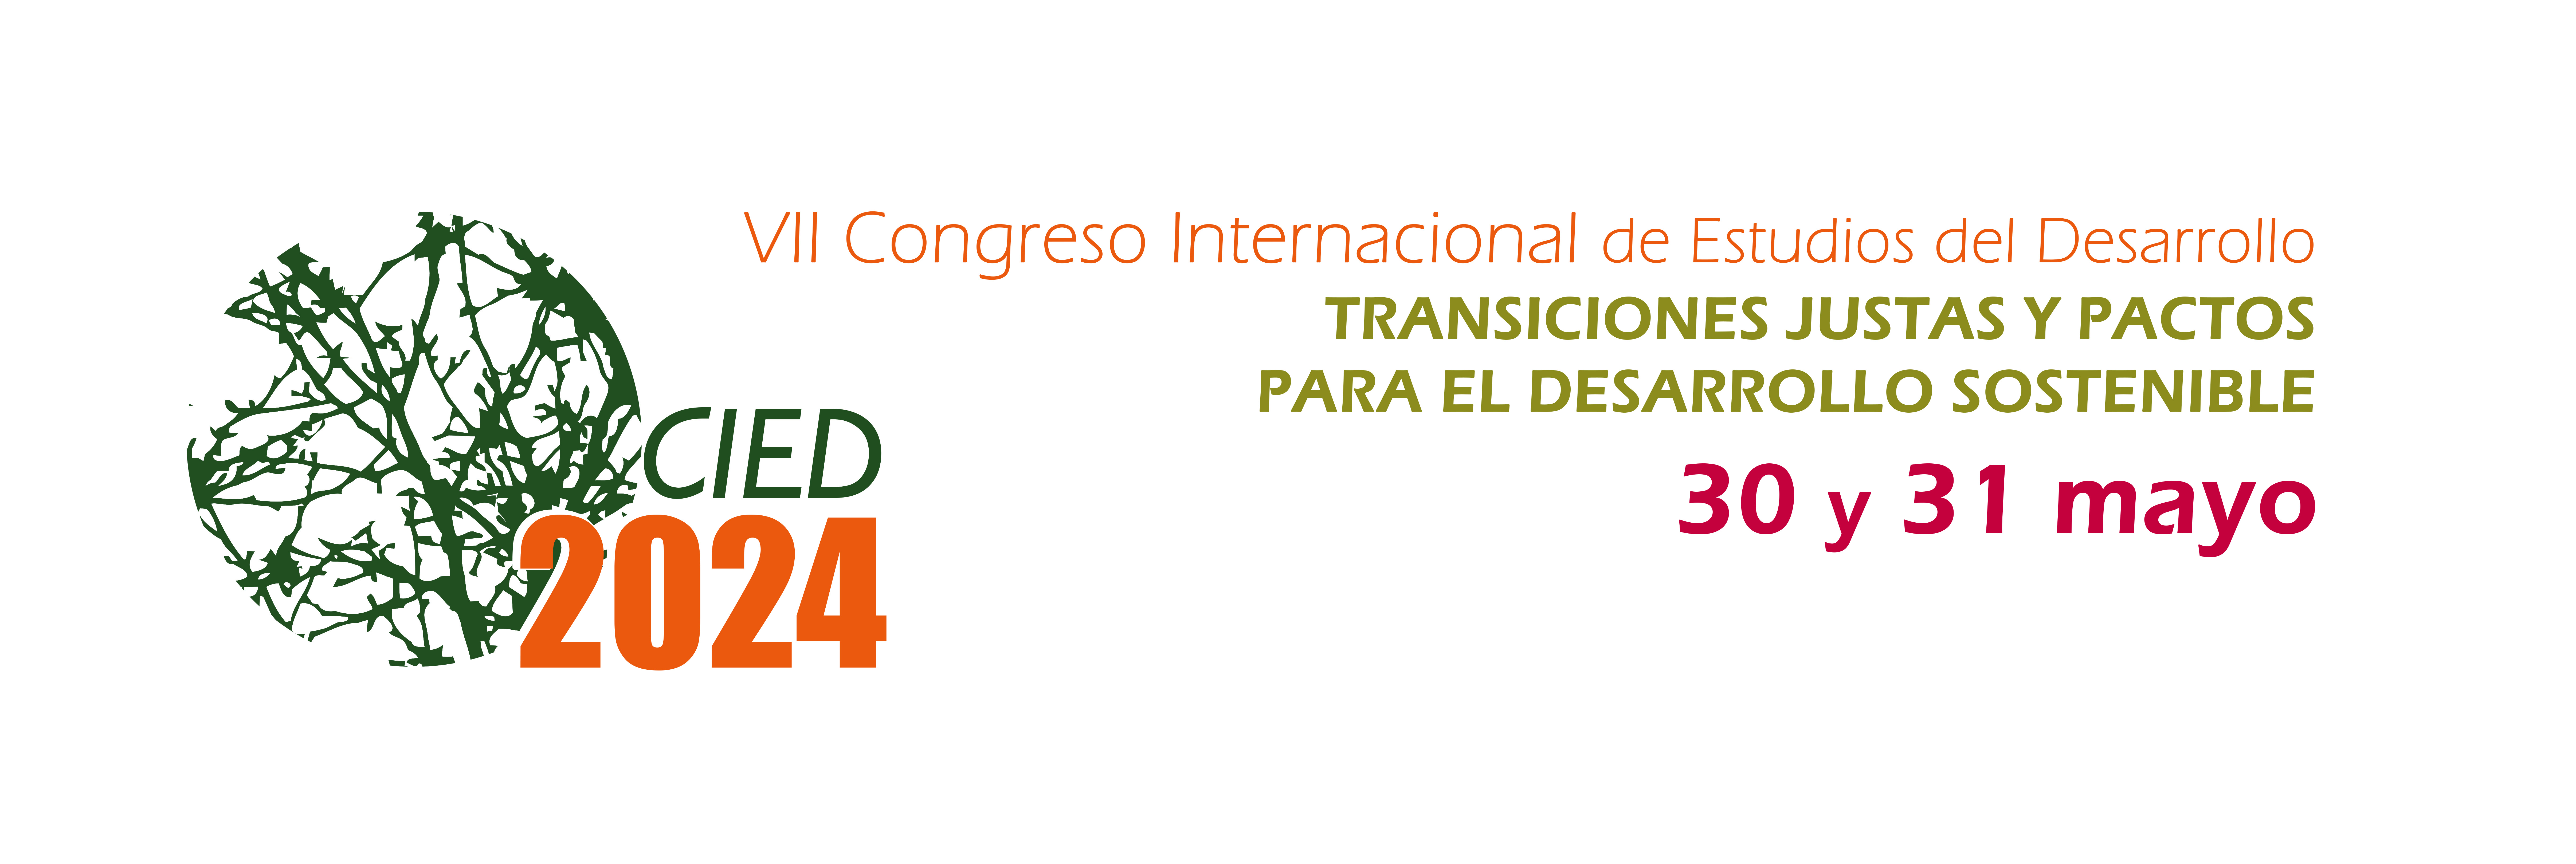 VII Congreso Internacional de Estudios del Desarrollo (REEDES)